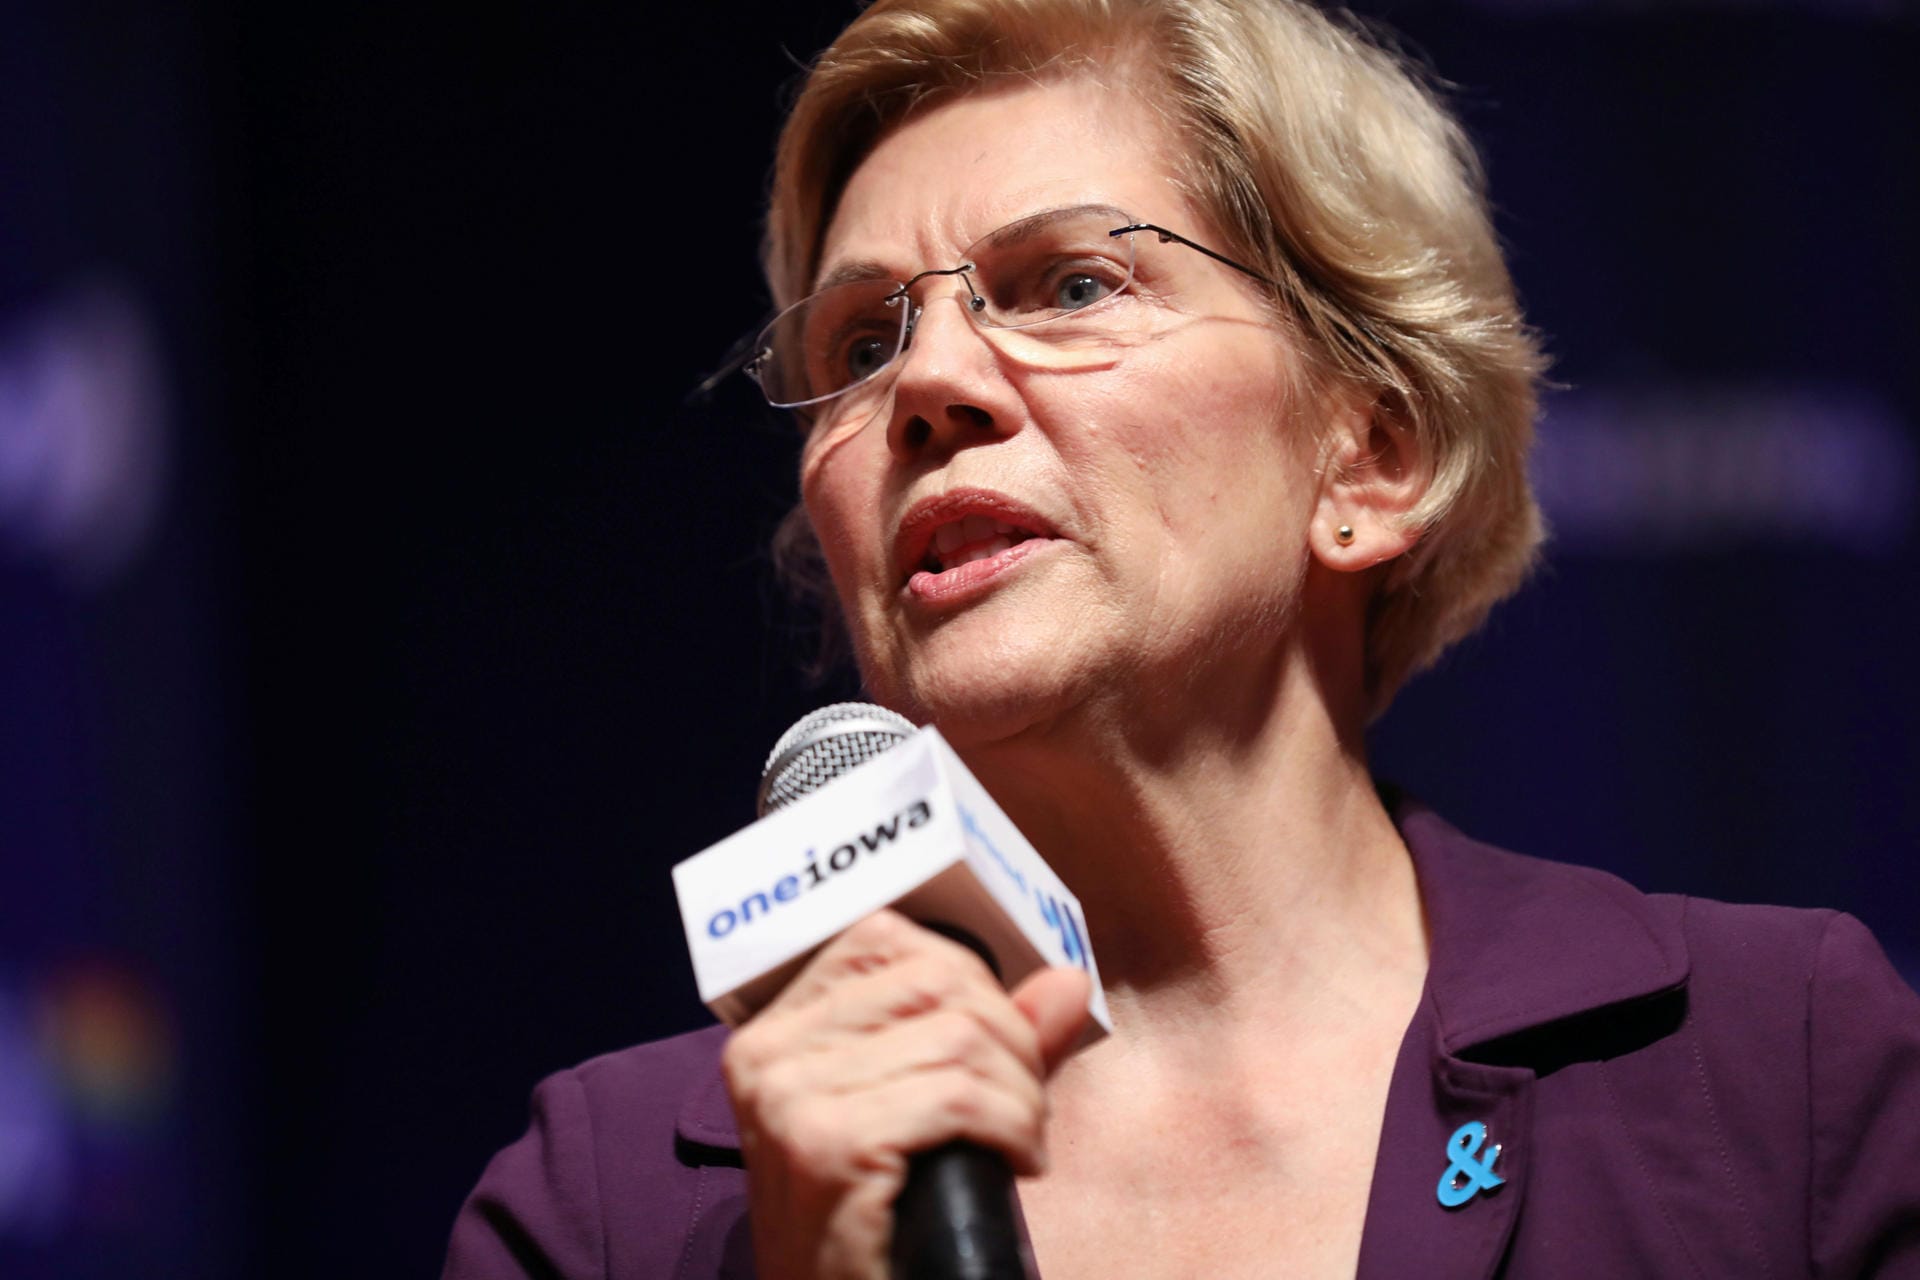 Die demokratische Senatorin für Massachusetts und Präsidentschaftskandidatin, Elizabeth Warren, sagt: "Der Kongress muss seine verfassungsgemäße Pflicht erfüllen und den Amtsenthebungsprozess gegen den Präsidenten einleiten. Niemand steht über dem Gesetz – nicht einmal der Präsident der Vereinigten Staaten."